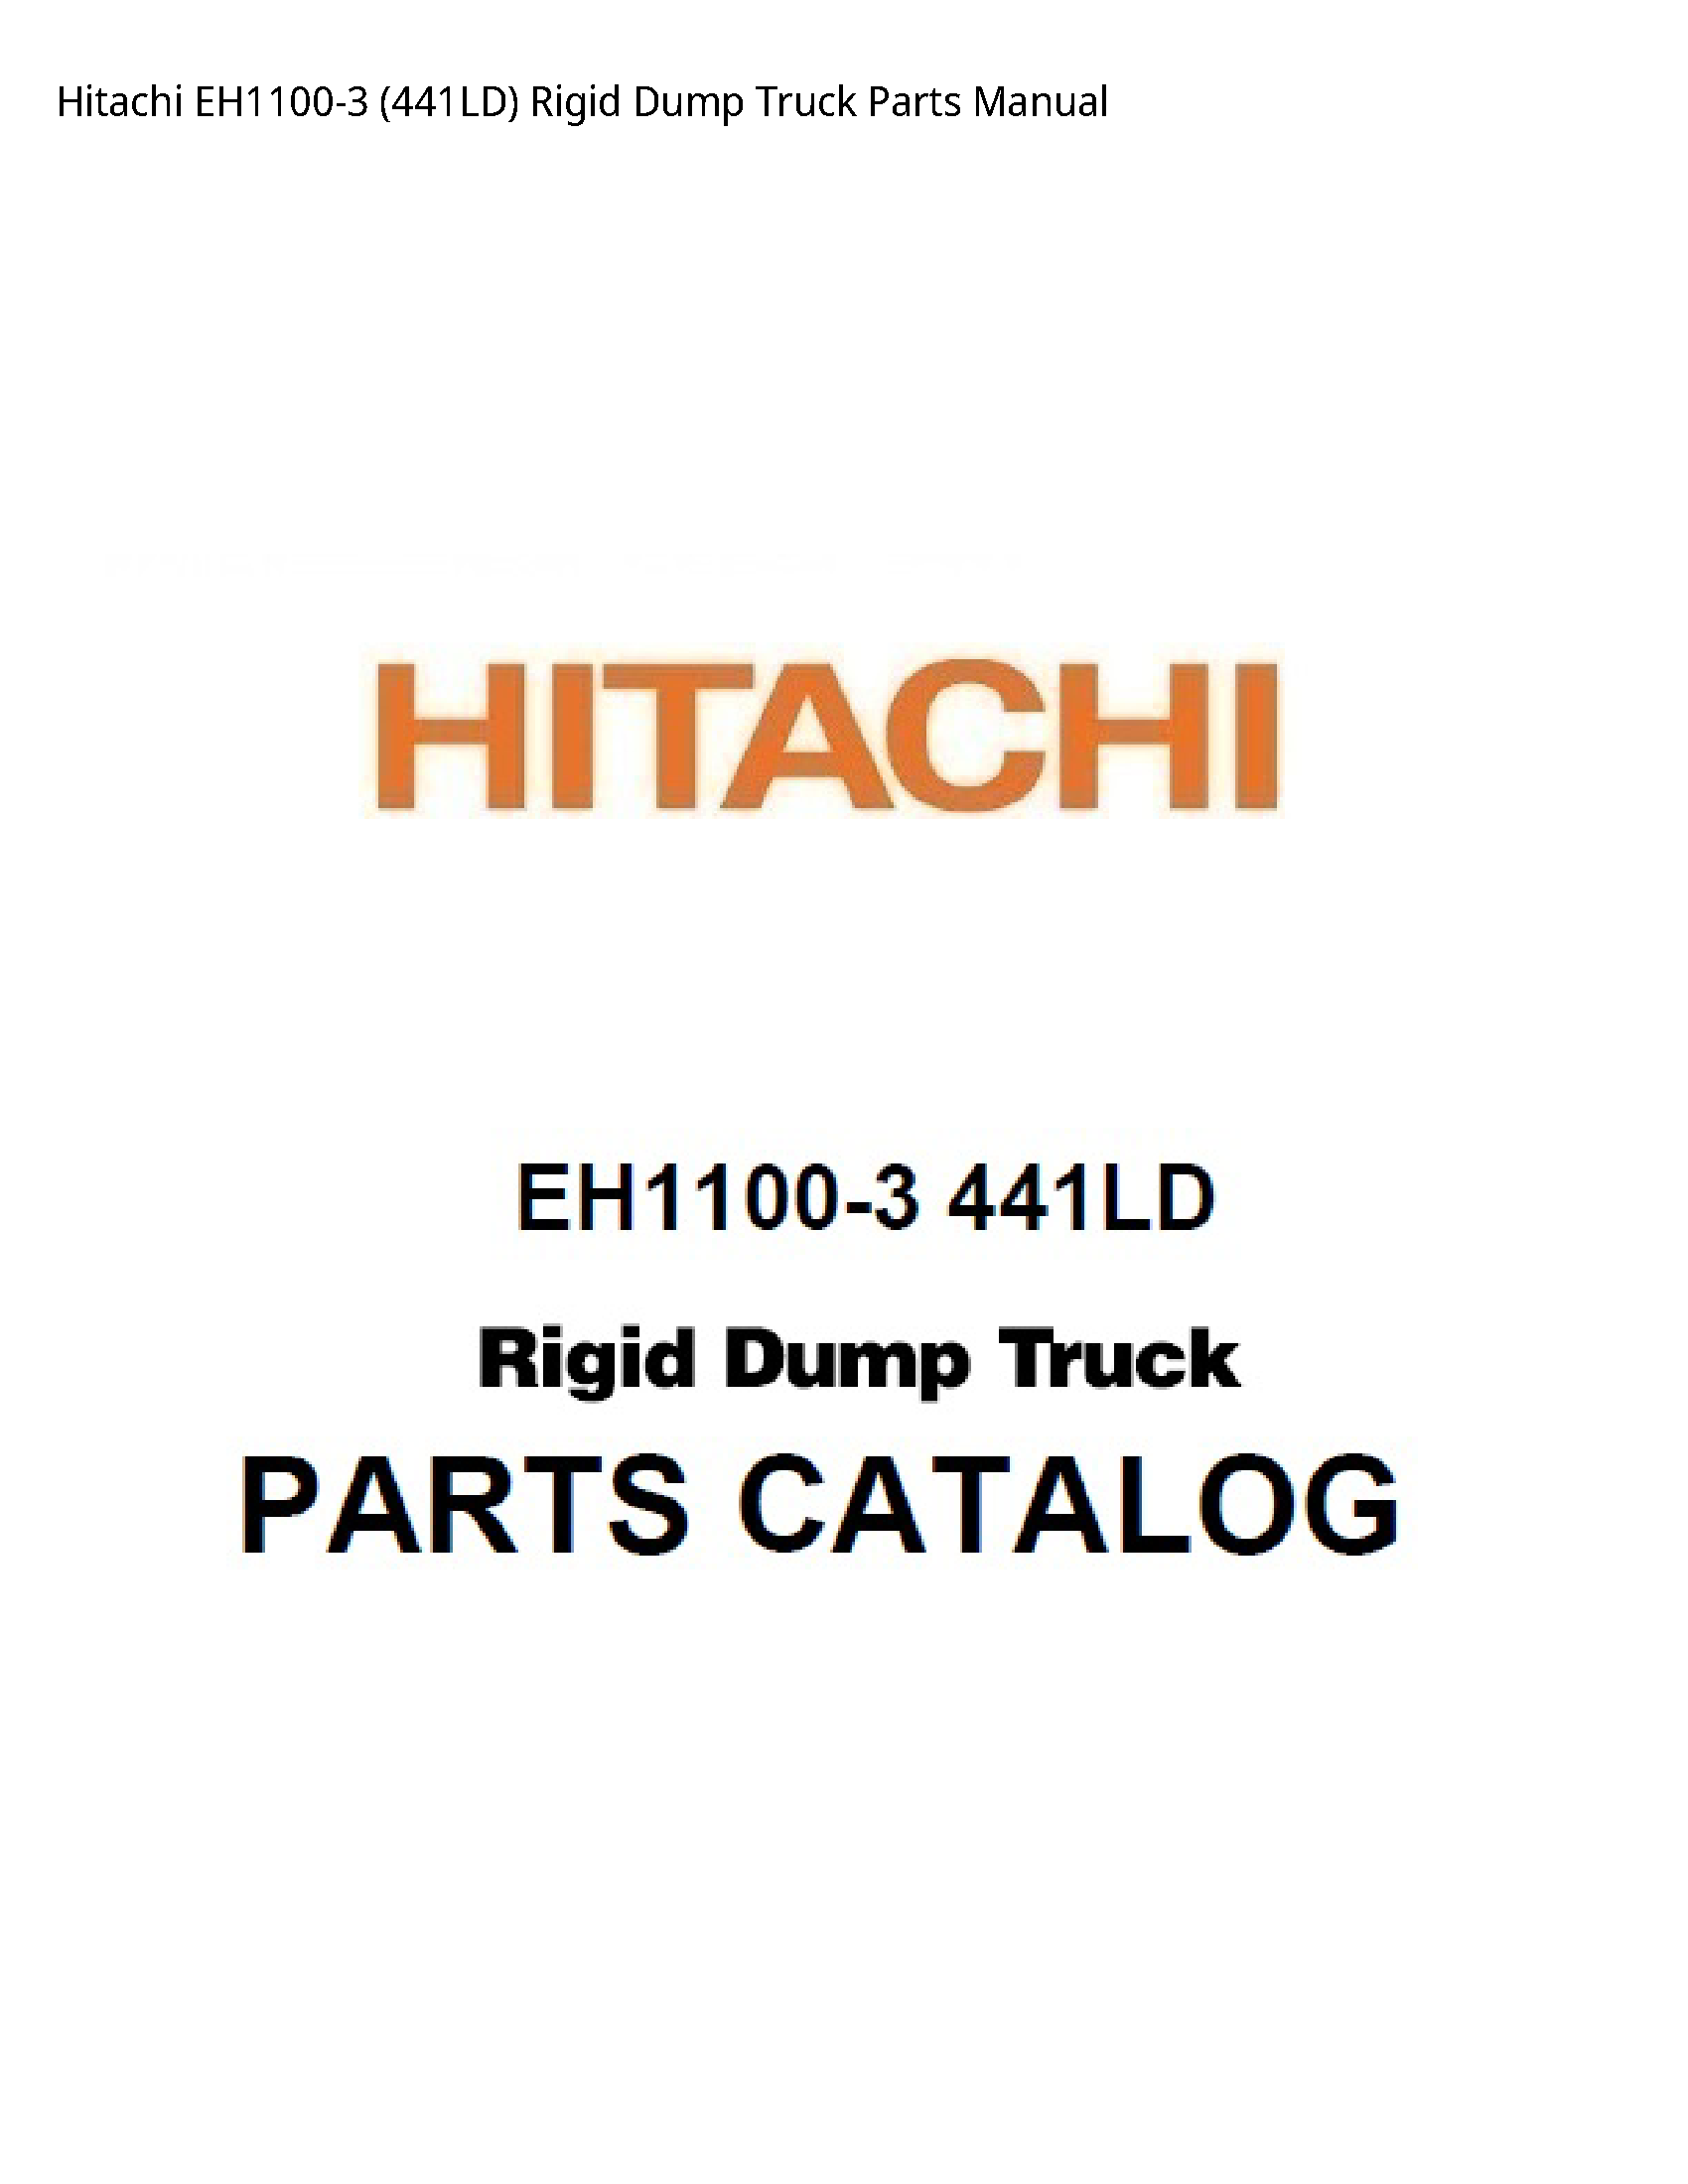 Hitachi EH1100-3 Rigid Dump Truck Parts manual